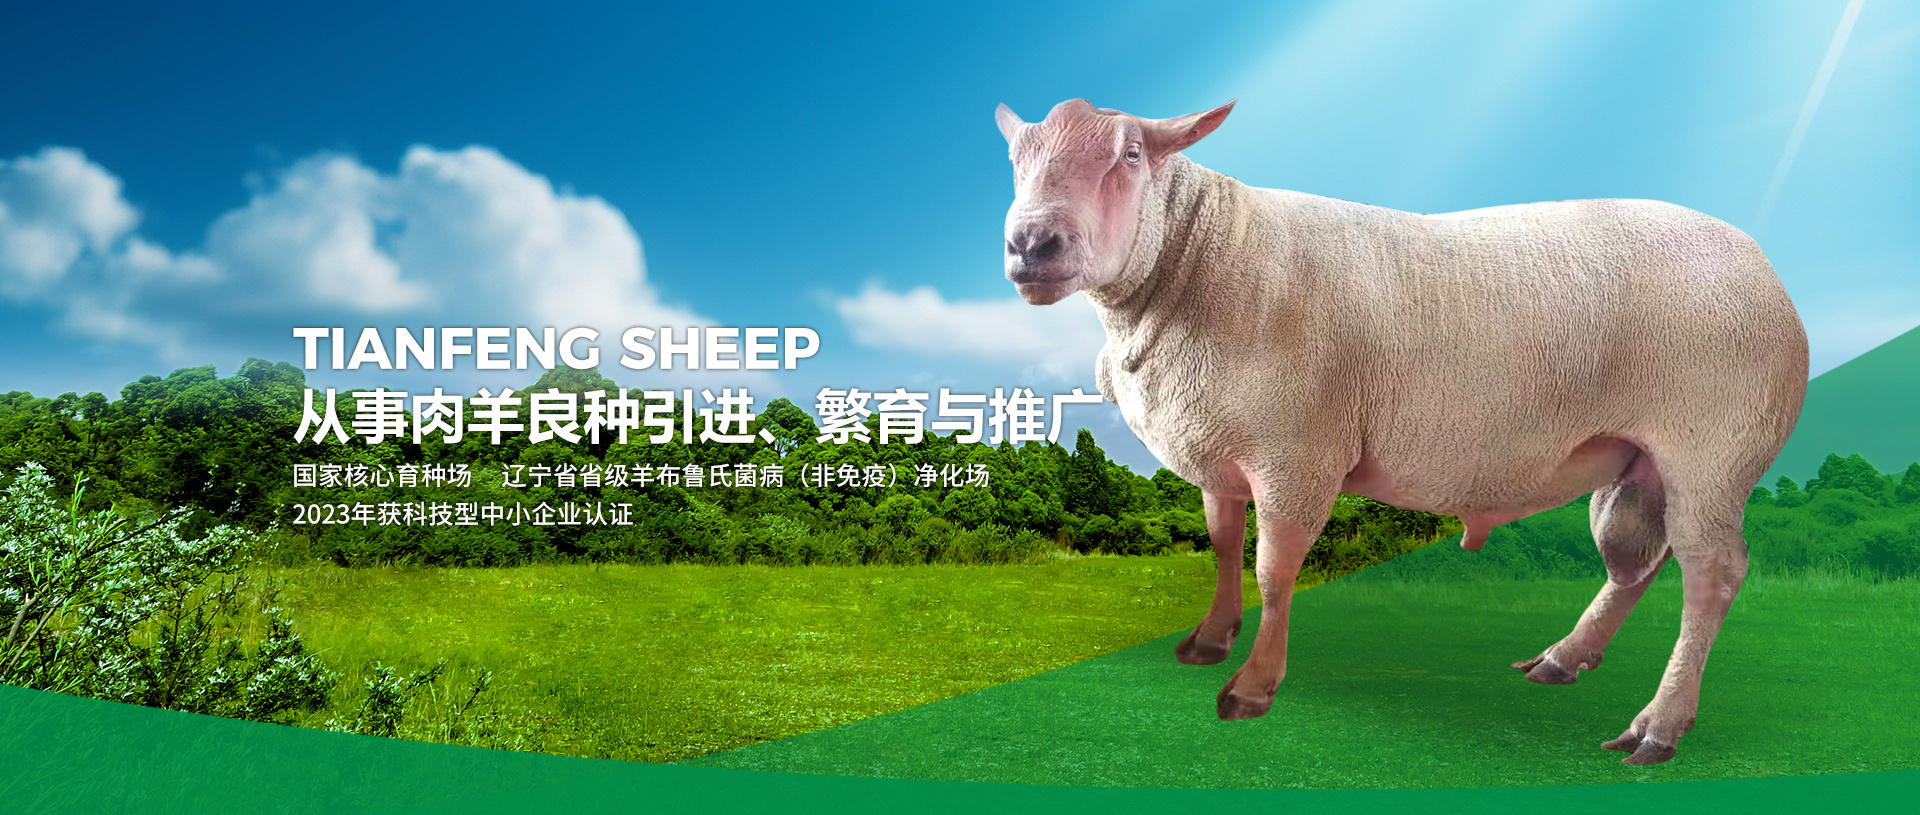 彰武县芭乐视频在线下载种羊养殖有限公司